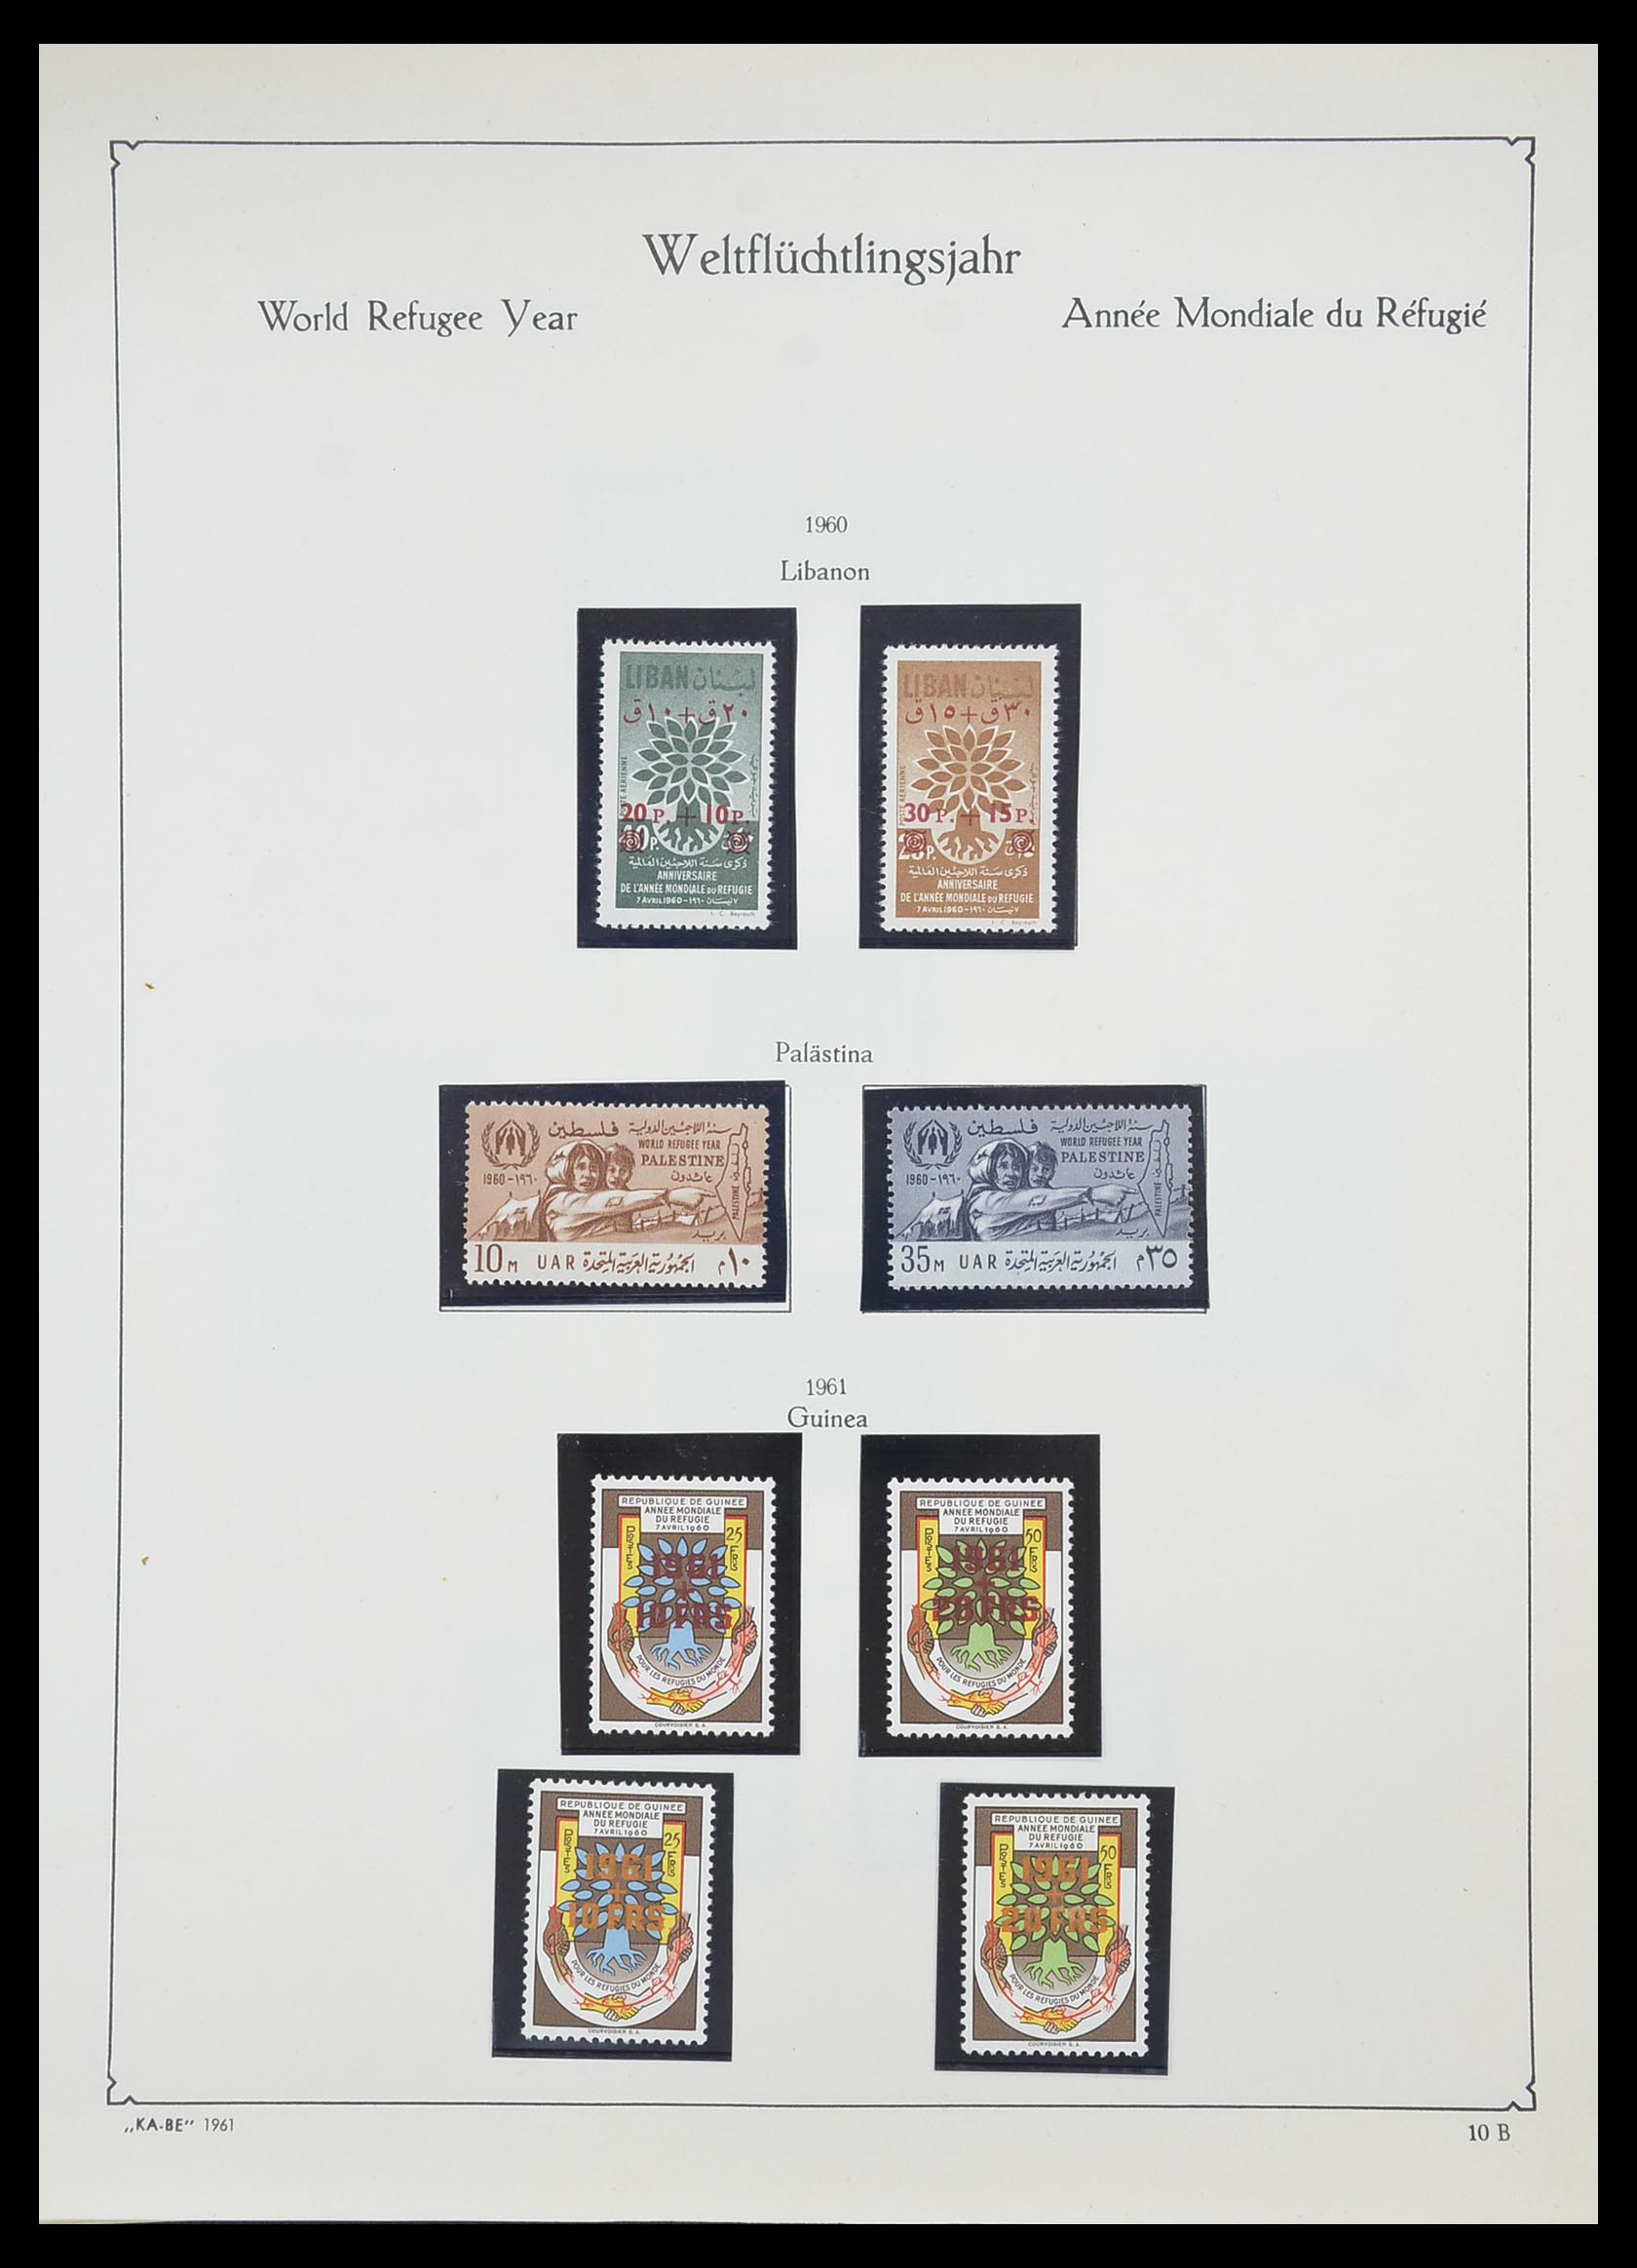 33747 087 - Postzegelverzameling 33747 Diverse motieven 1958-1986.